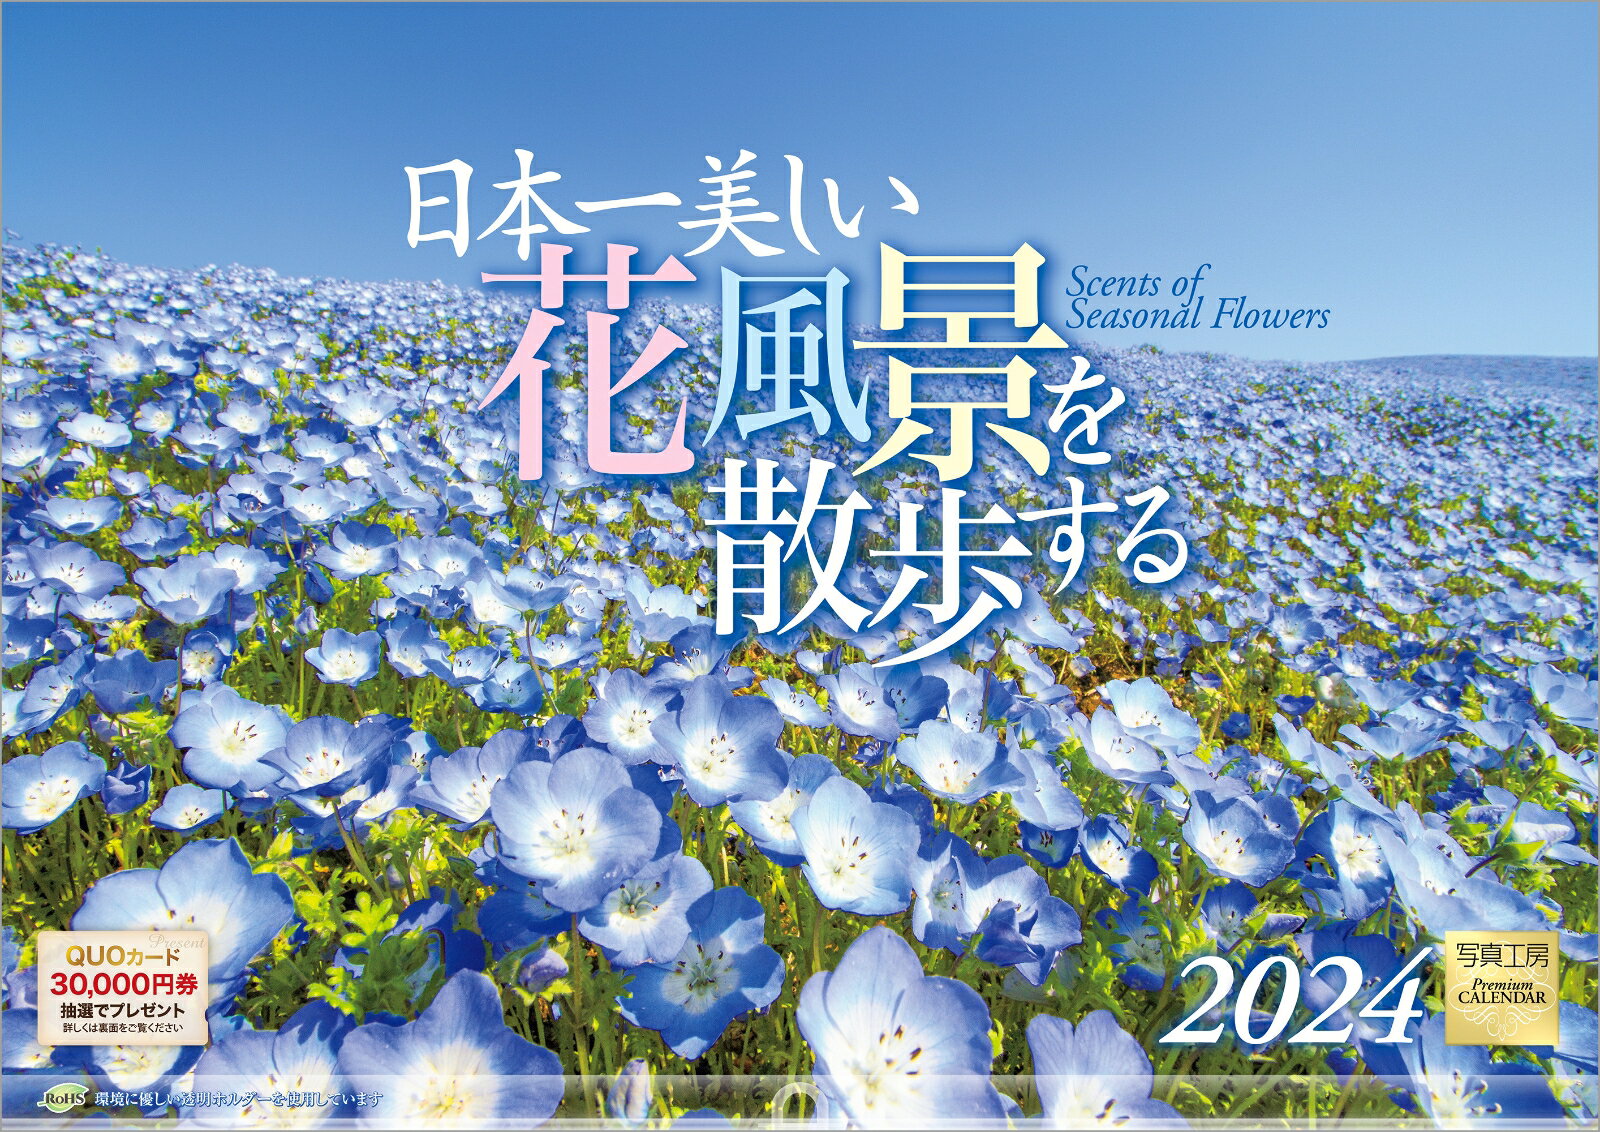 『日本一美しい花風景を散歩する』 2024 カレ...の商品画像